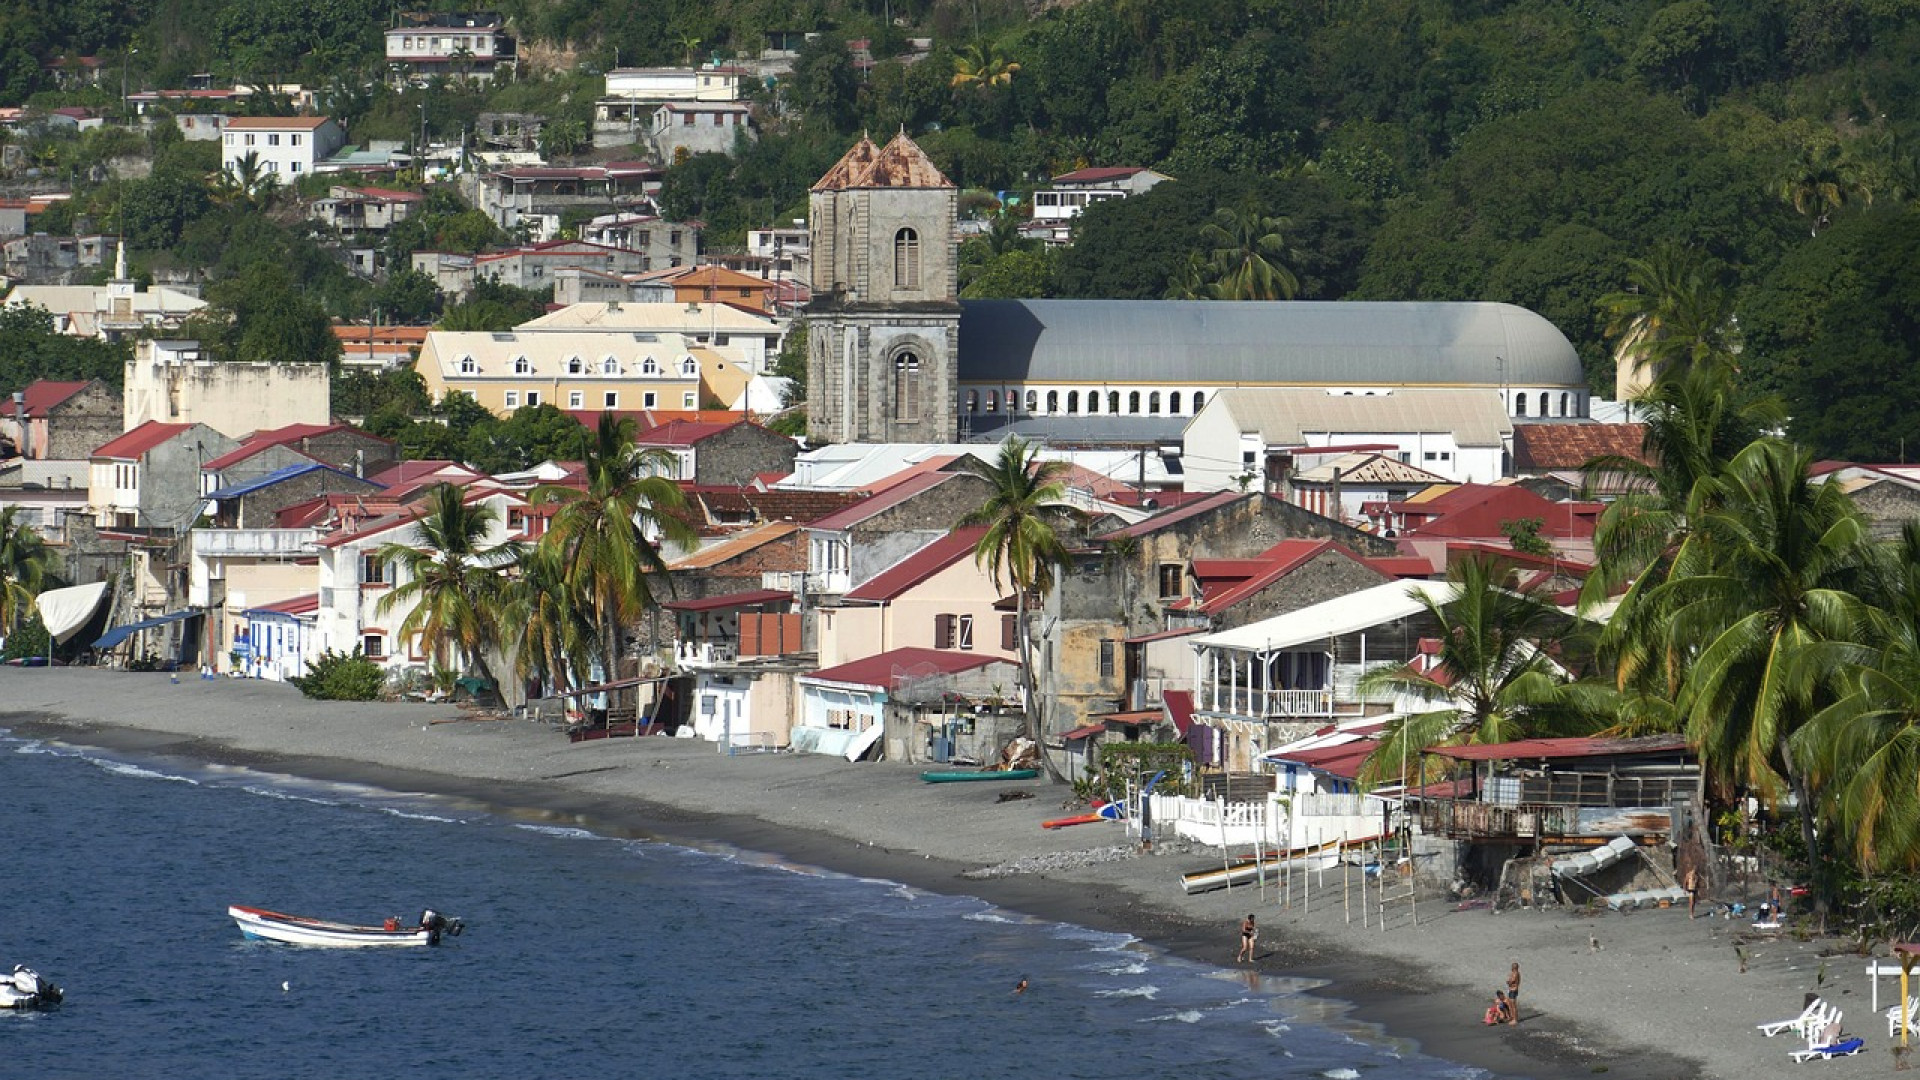 Quels sont les endroits les plus populaires à voir lorsqu’on loue une voiture en Martinique ?